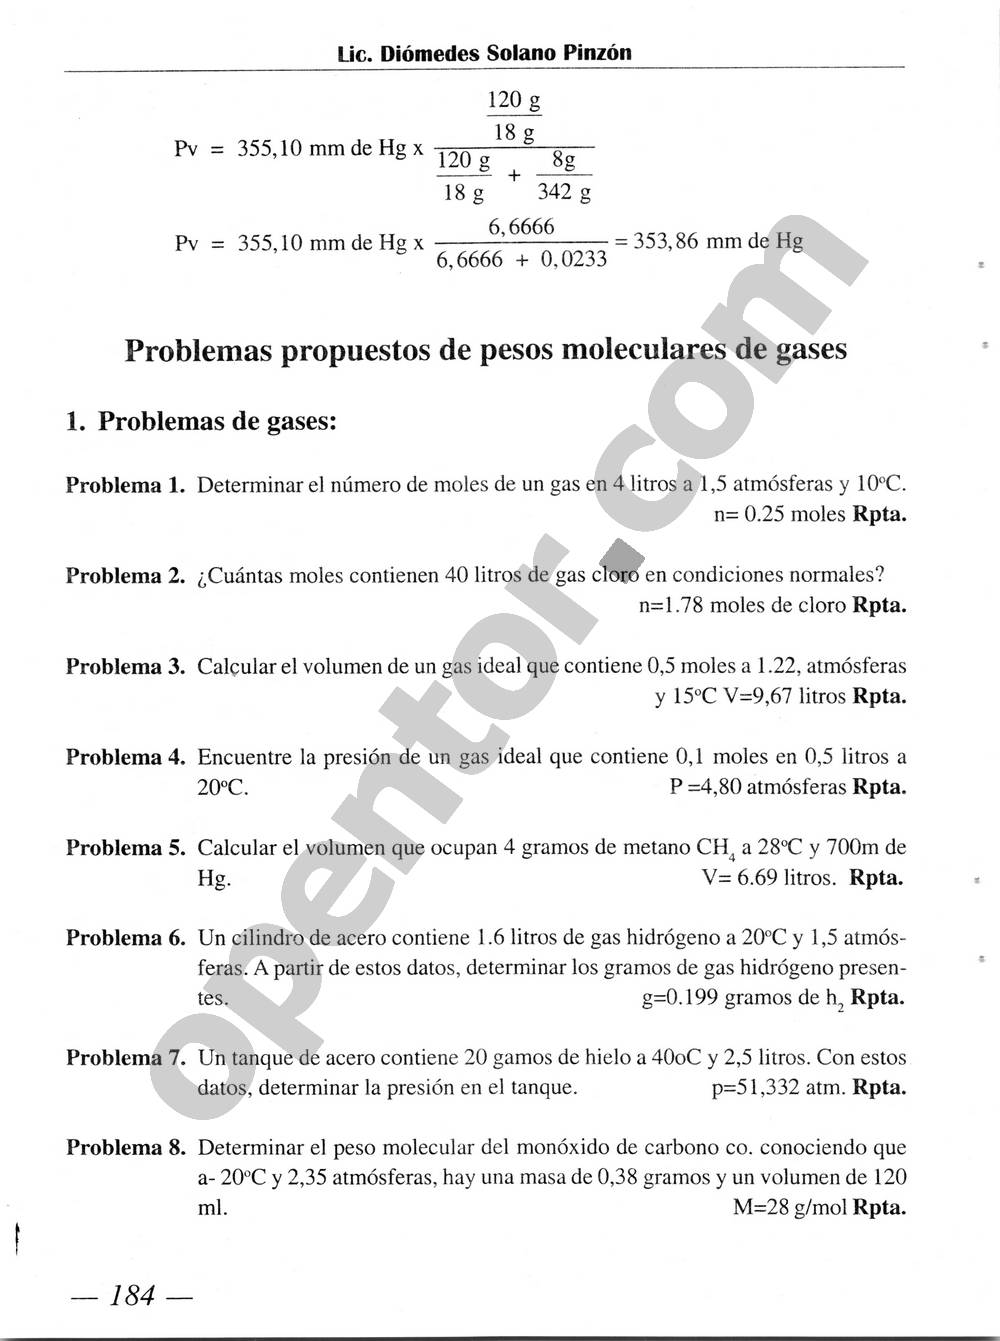 Química Simplificada de Diómedes Solano - Página 184